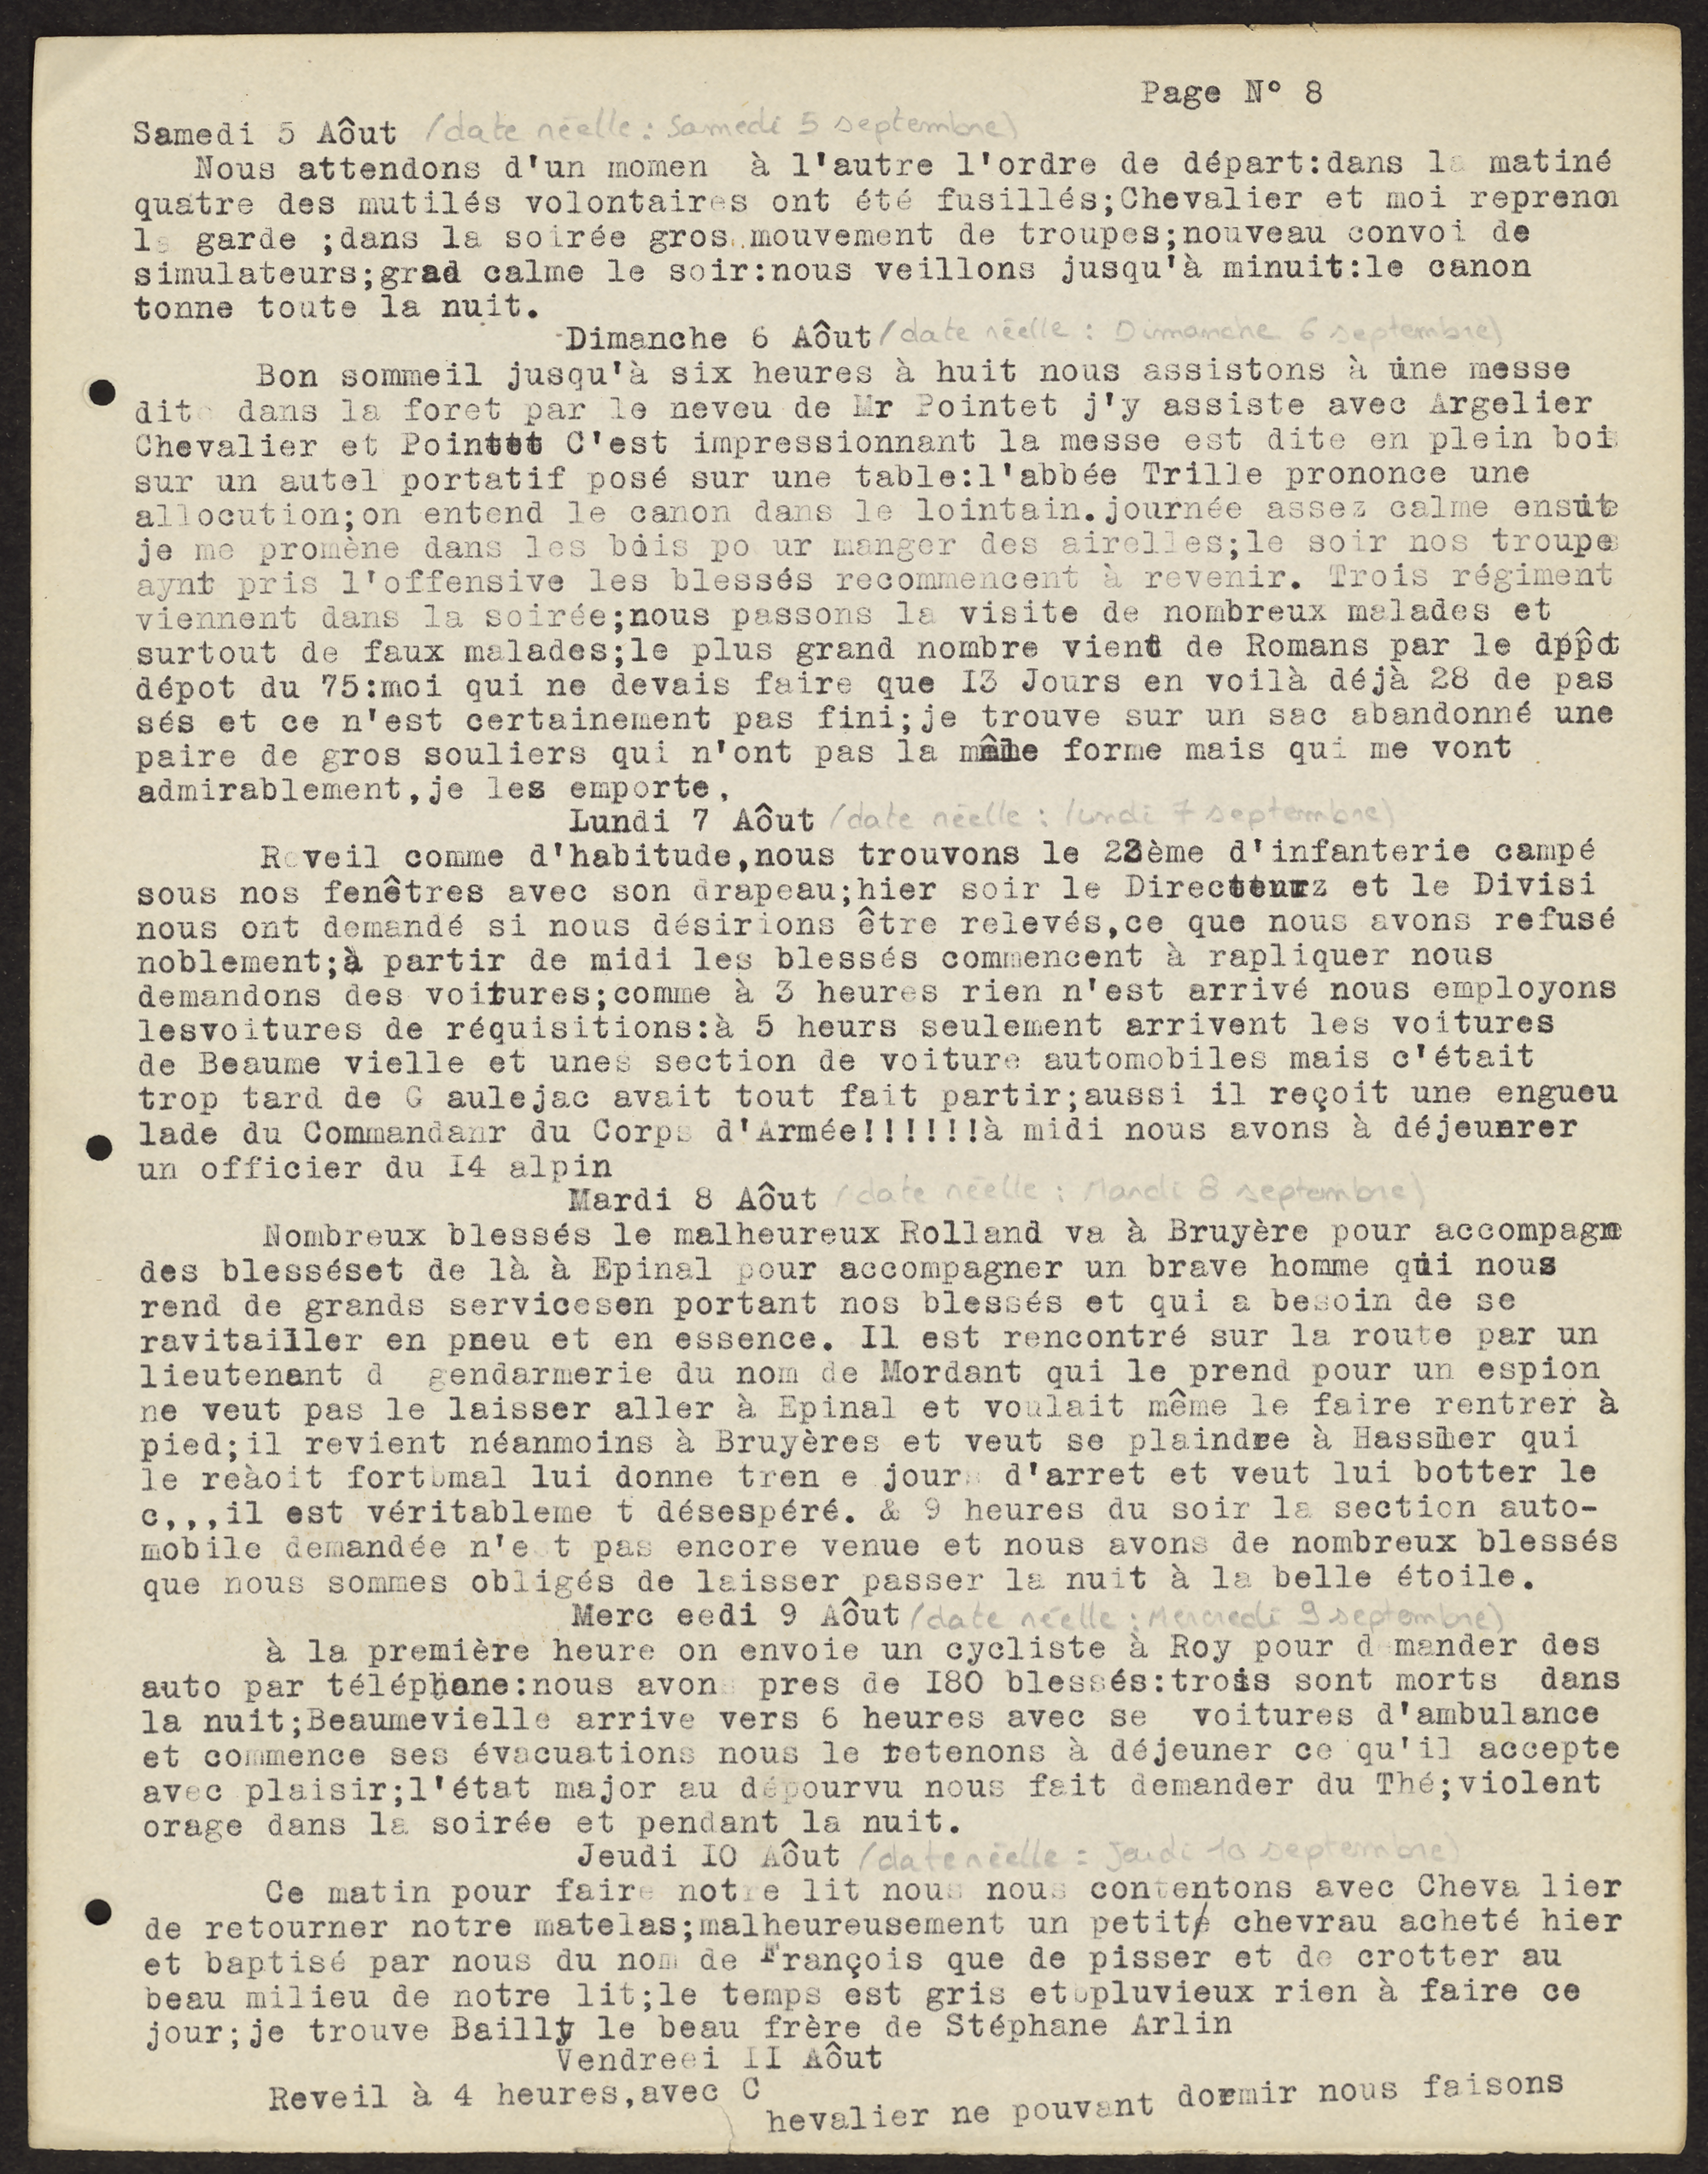 Journal de Campagne d'Auguste Verrière, médecin chirurgien lyonnais, le 9 août 1914 - 1II/506